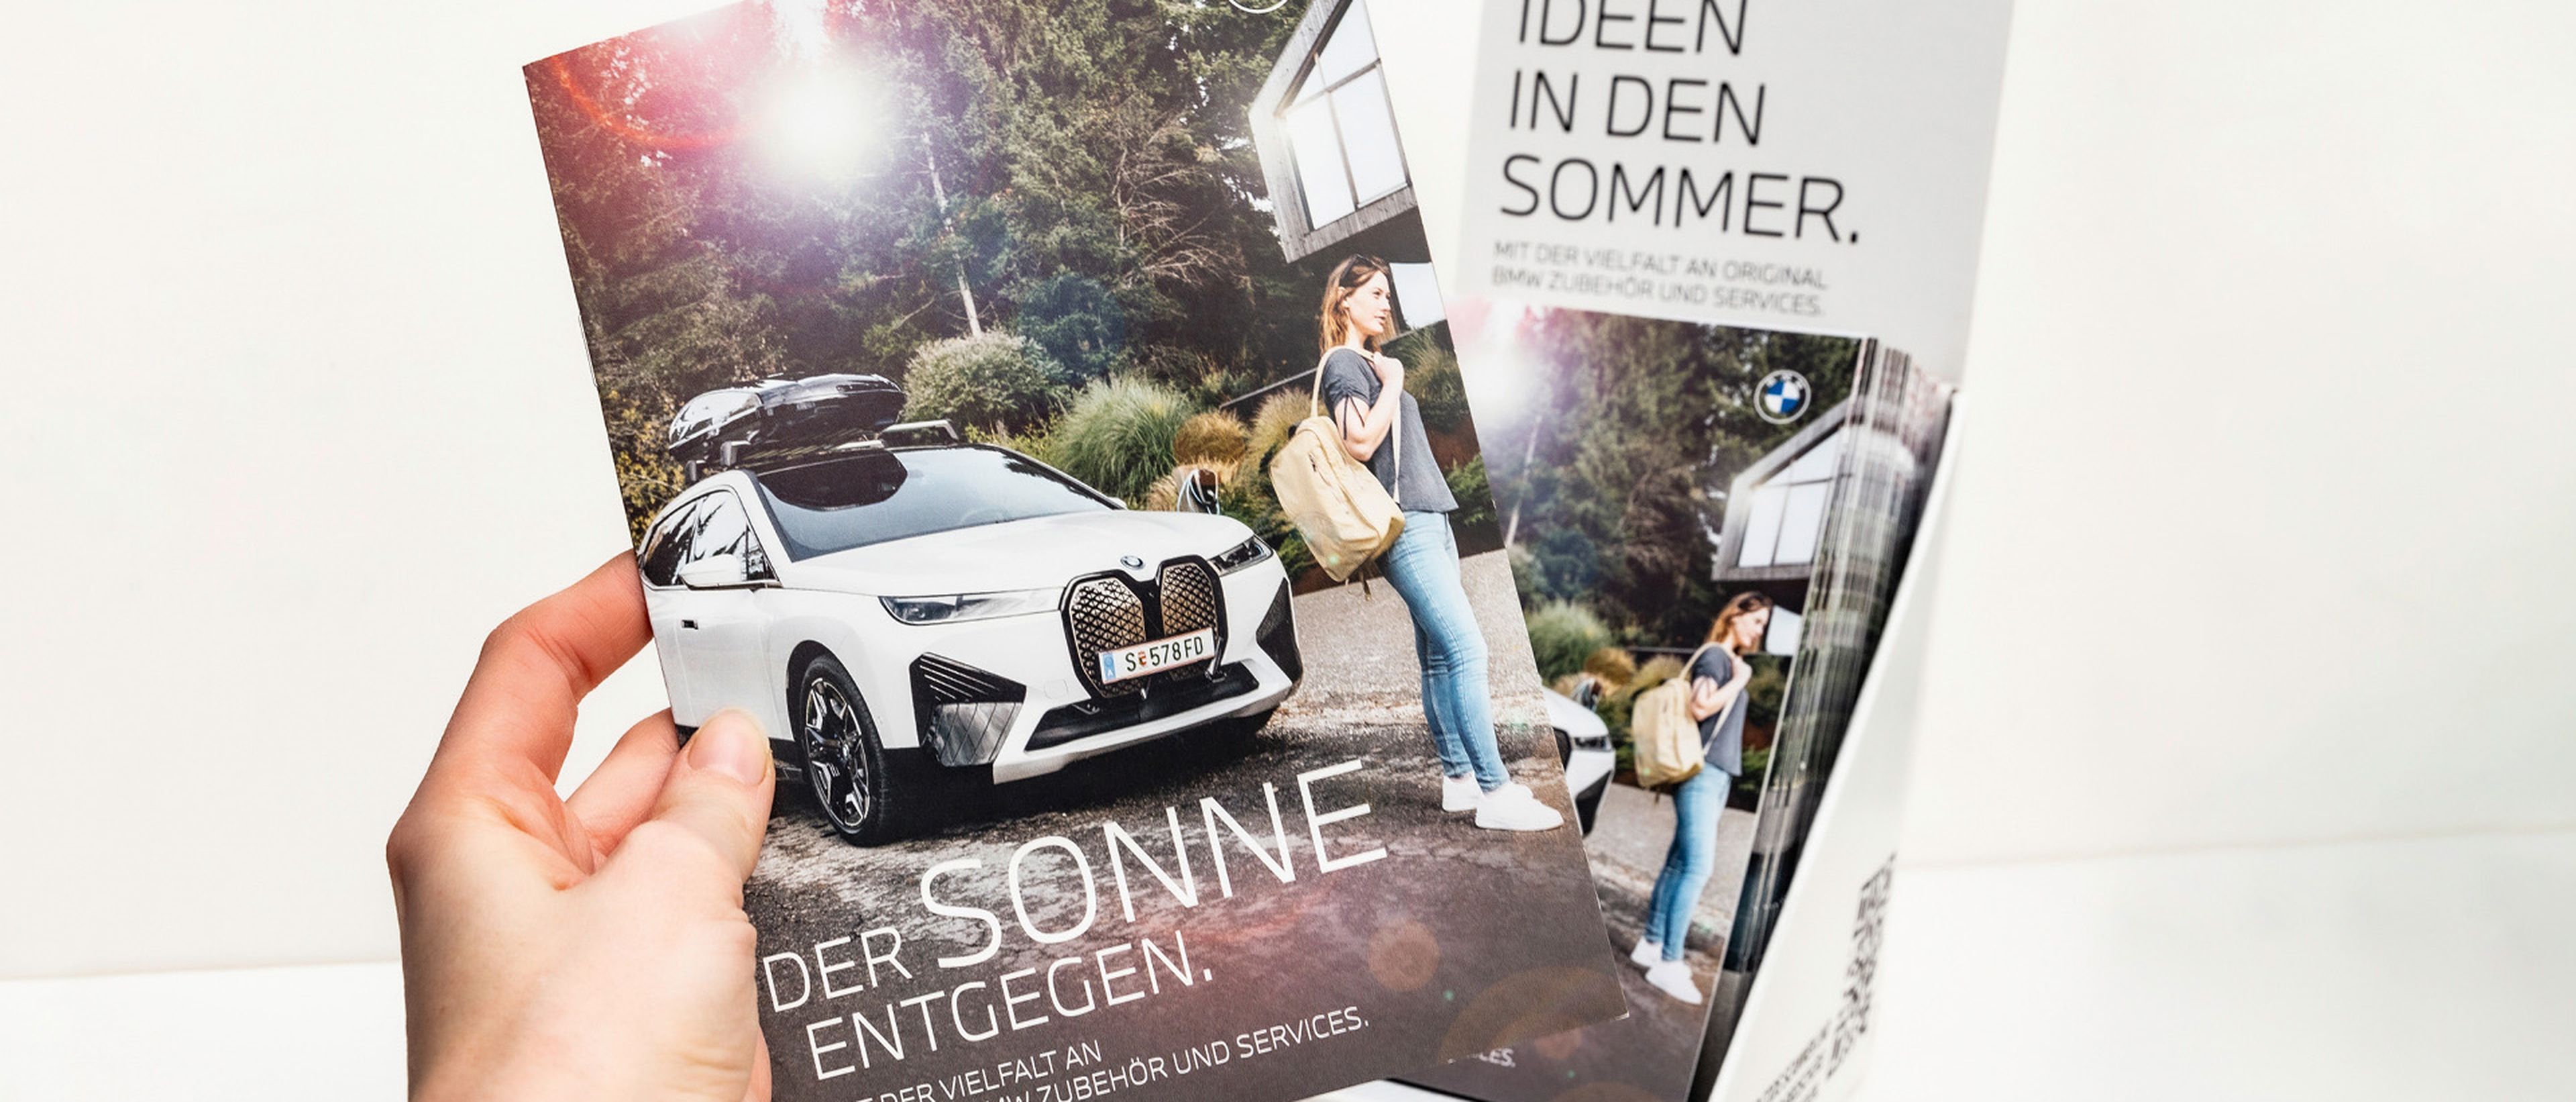 Folder zur BMW Kampagne "Der Sonne entgegen"